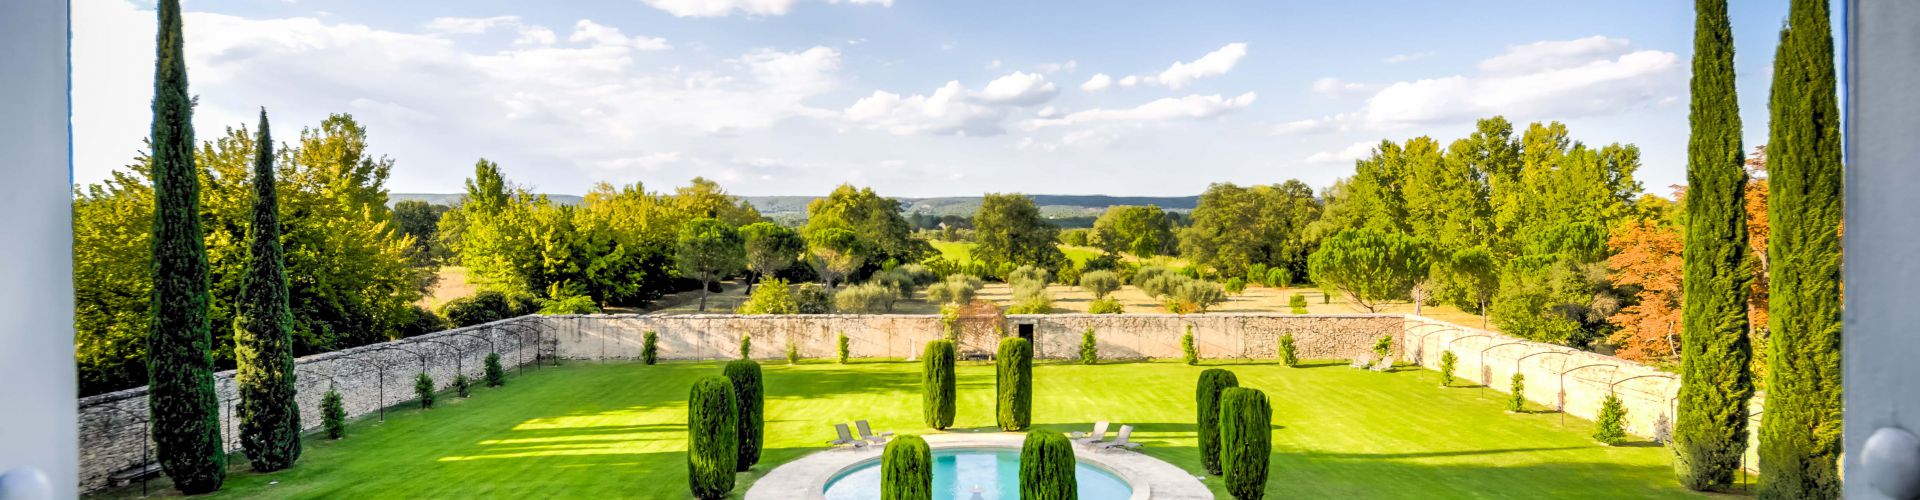 Rechercher un bien - Achat immobilier d’exception Languedoc Roussillon